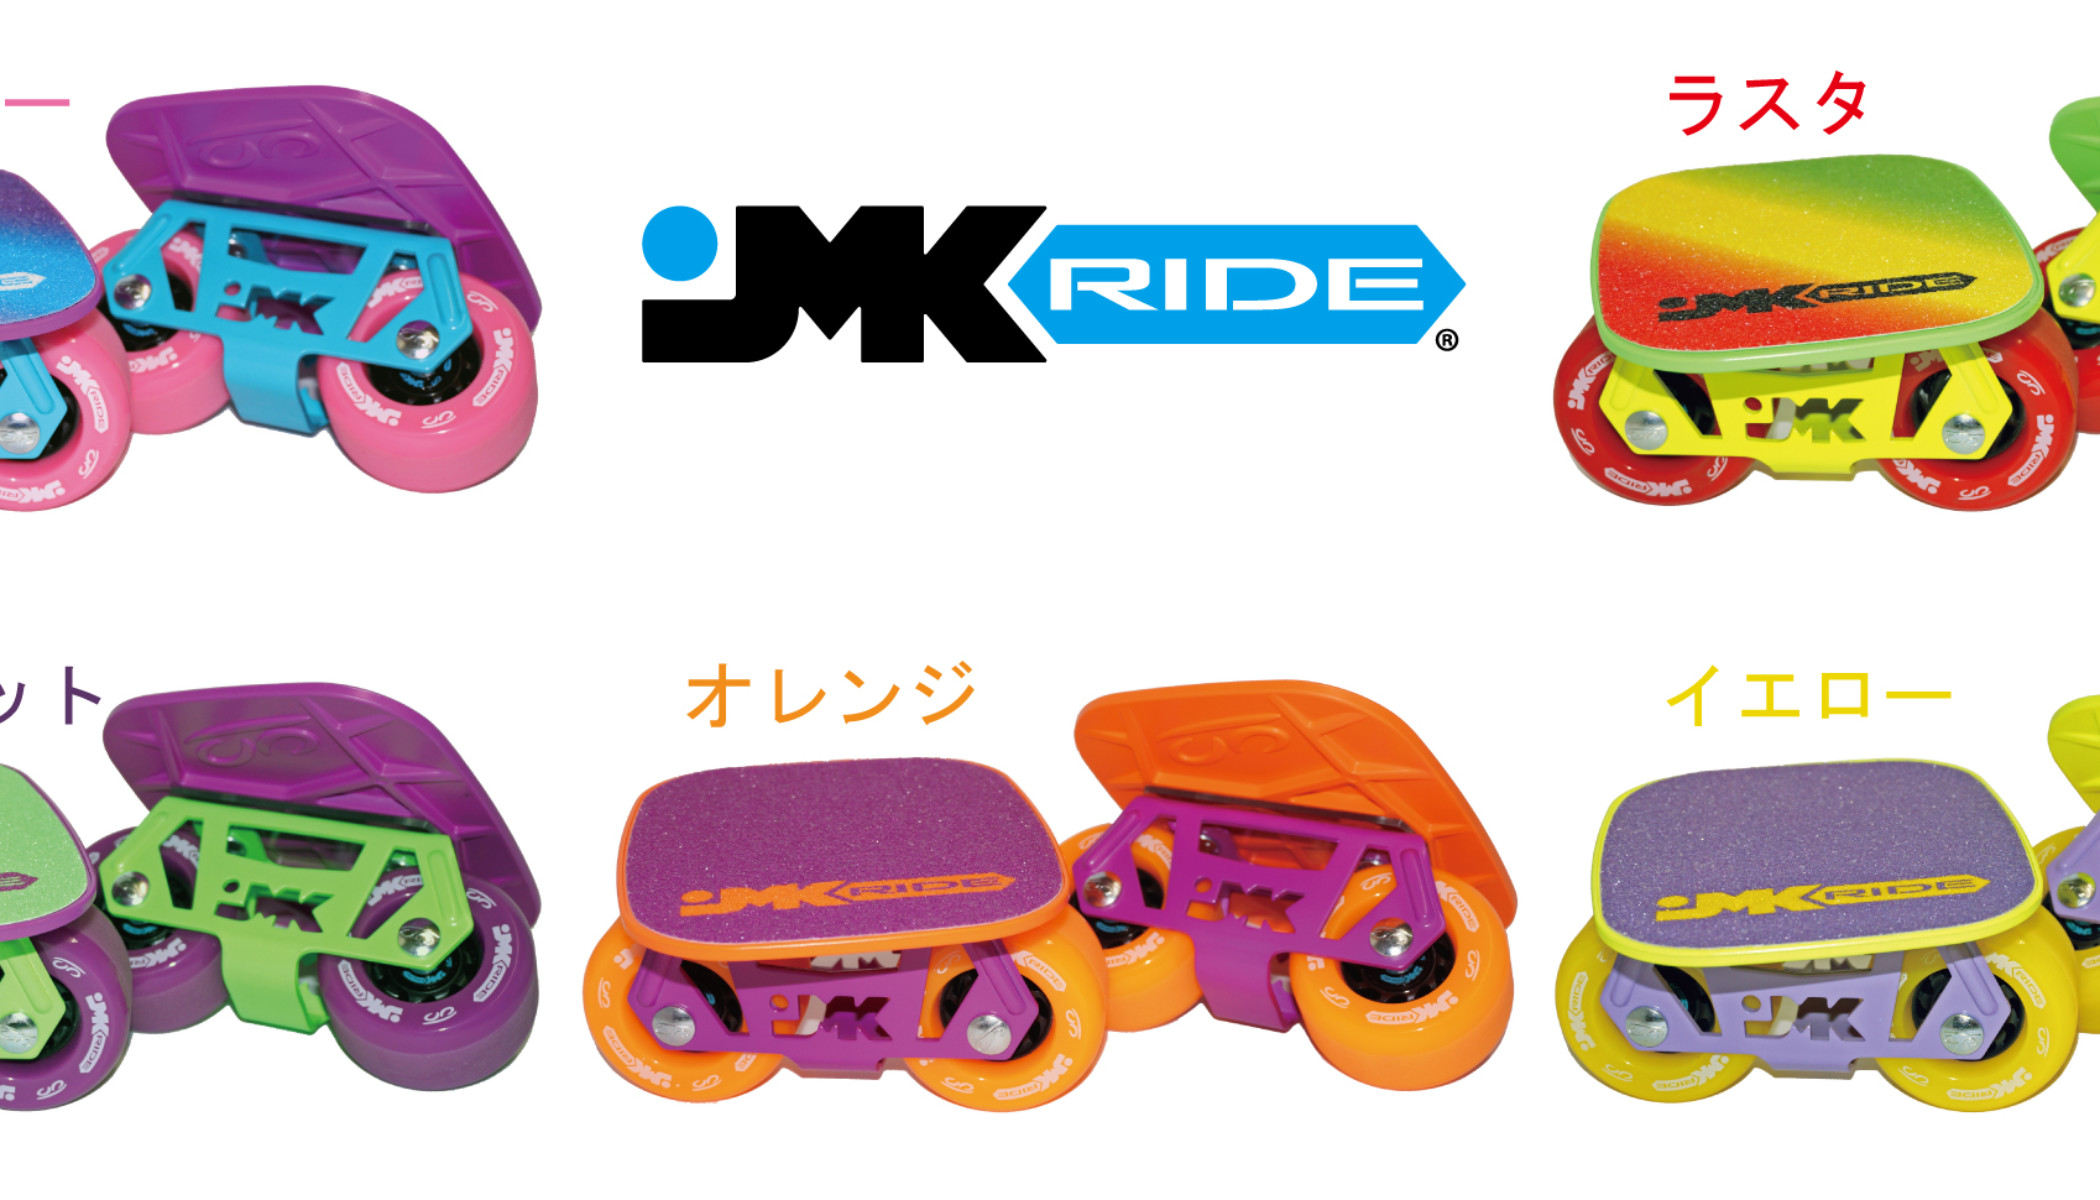 JMKスケート | JMKRIDE公式サイト